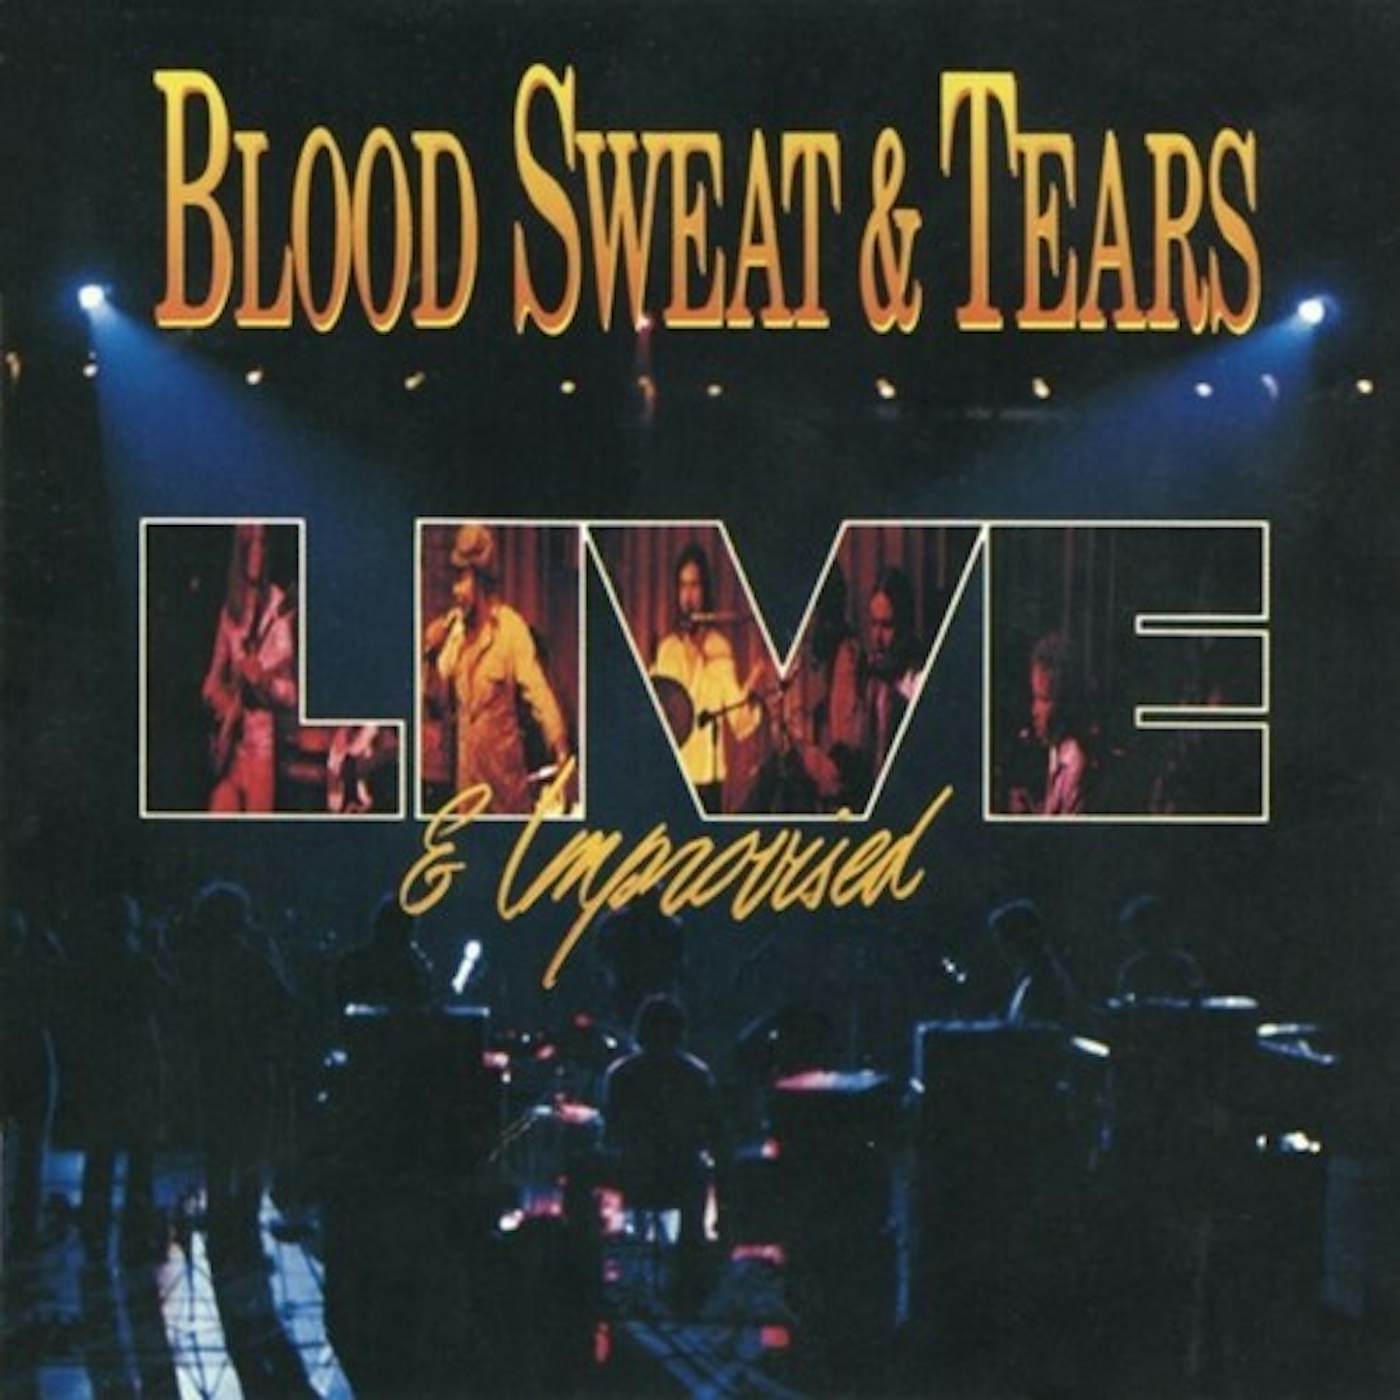 Blood, Sweat & Tears LIVE & IMPROVISED CD